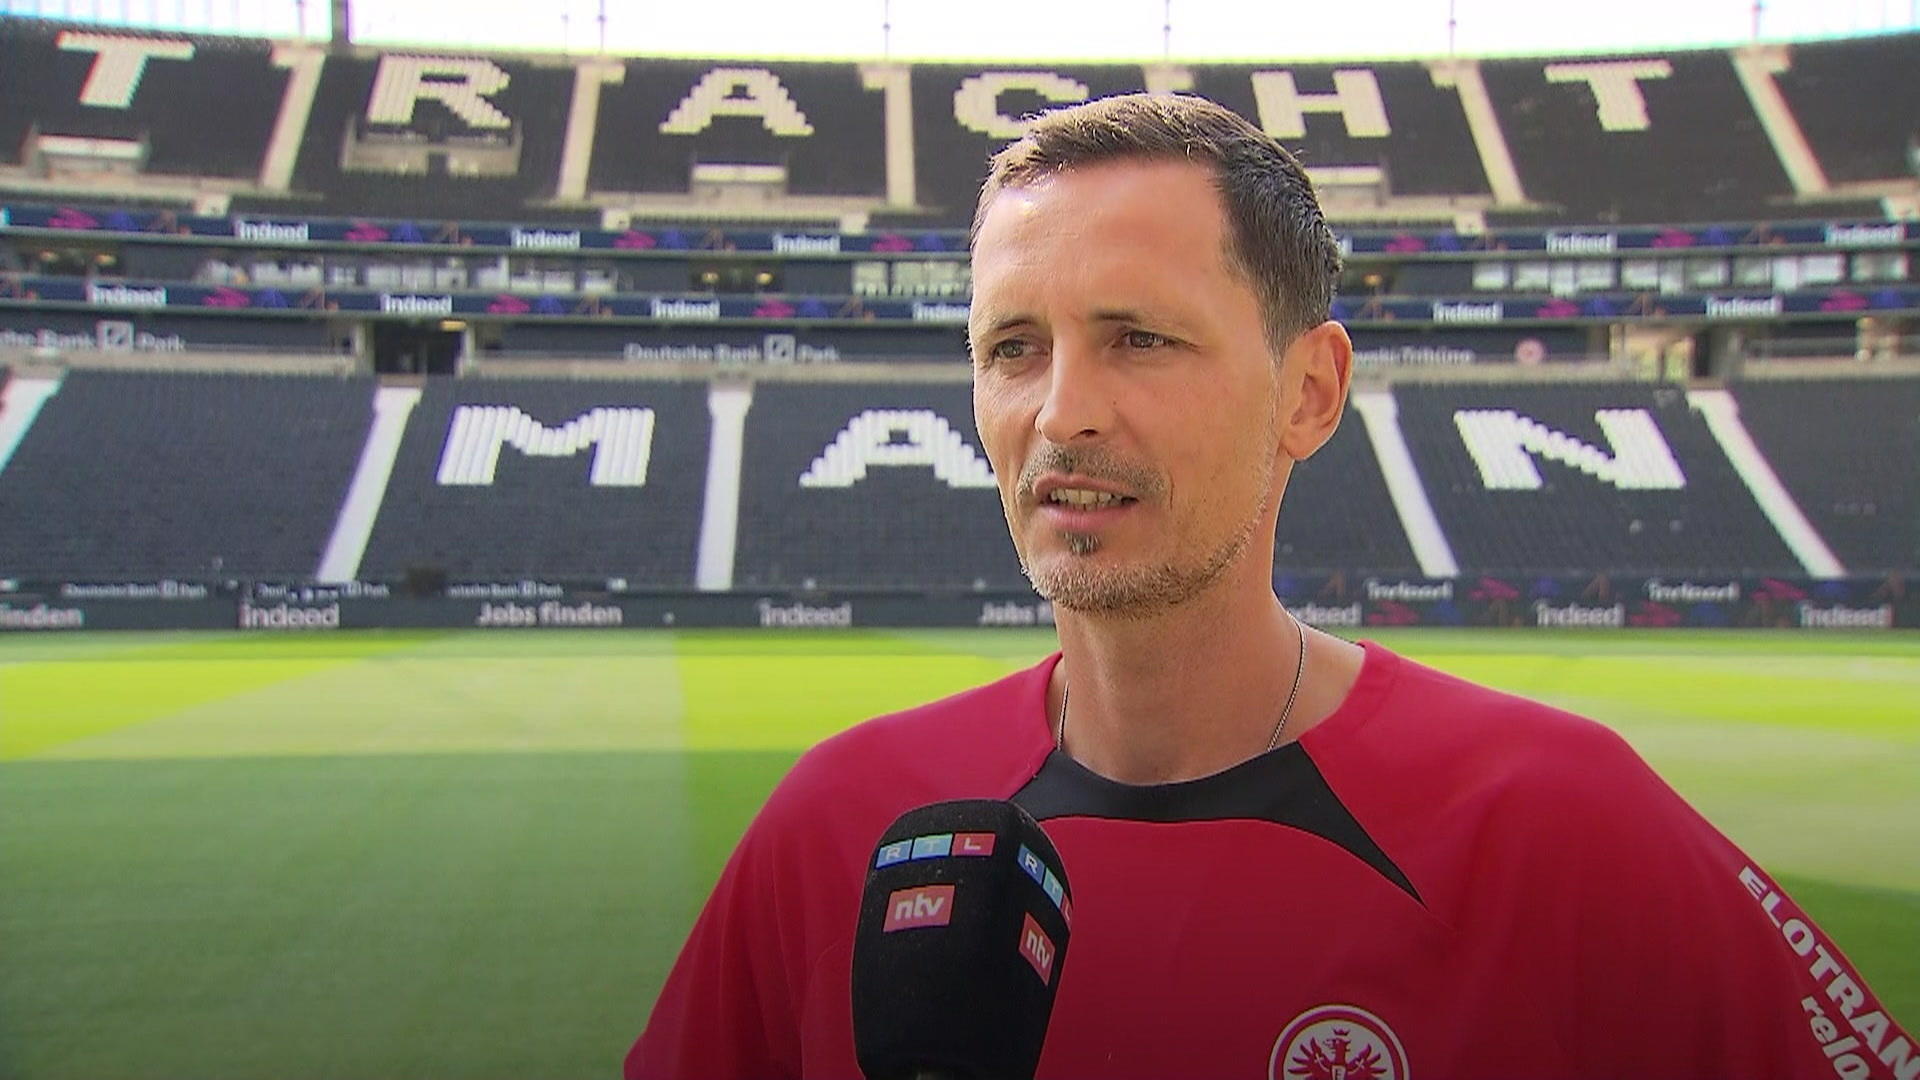 Toppmöller glaubt an die Kraft der SGE-Fans Frankfurt vor entscheidendem Spiel